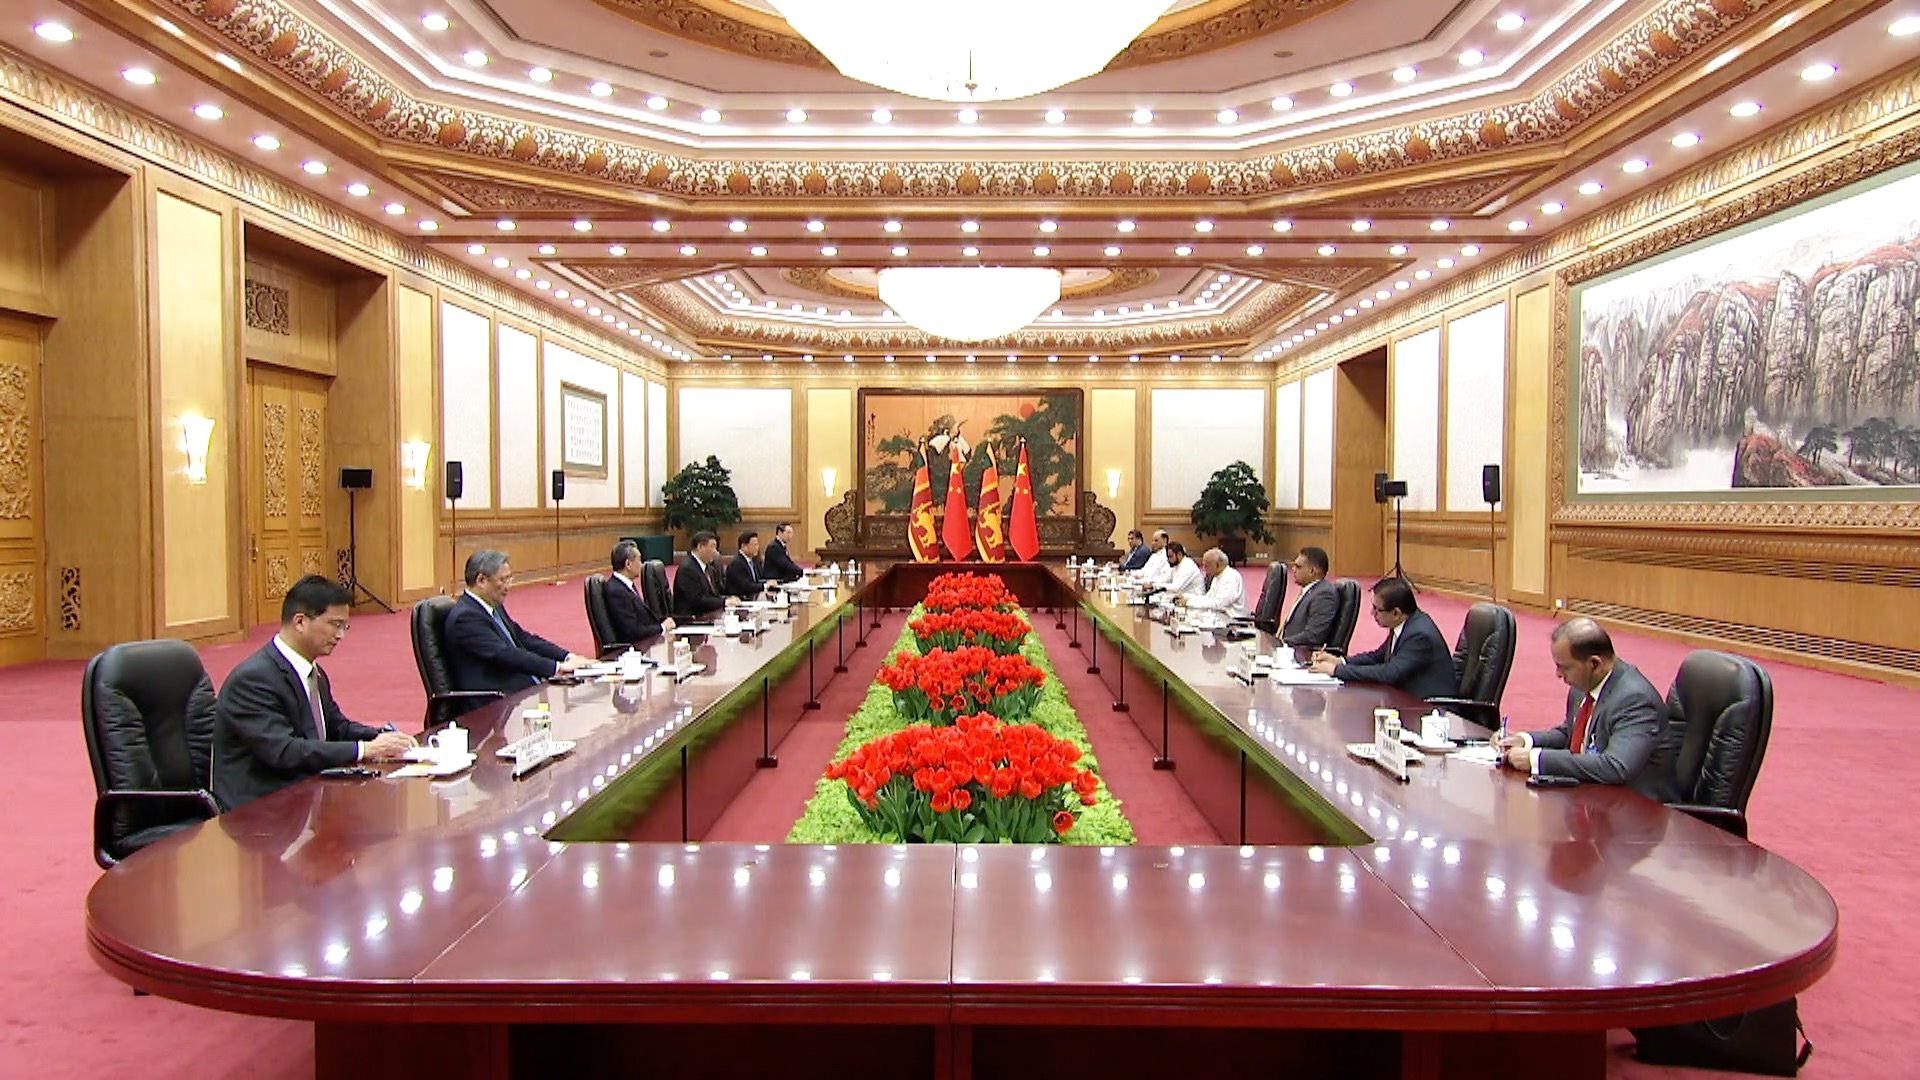 Xi: People of China and Sri Lanka have a natural sense of closeness